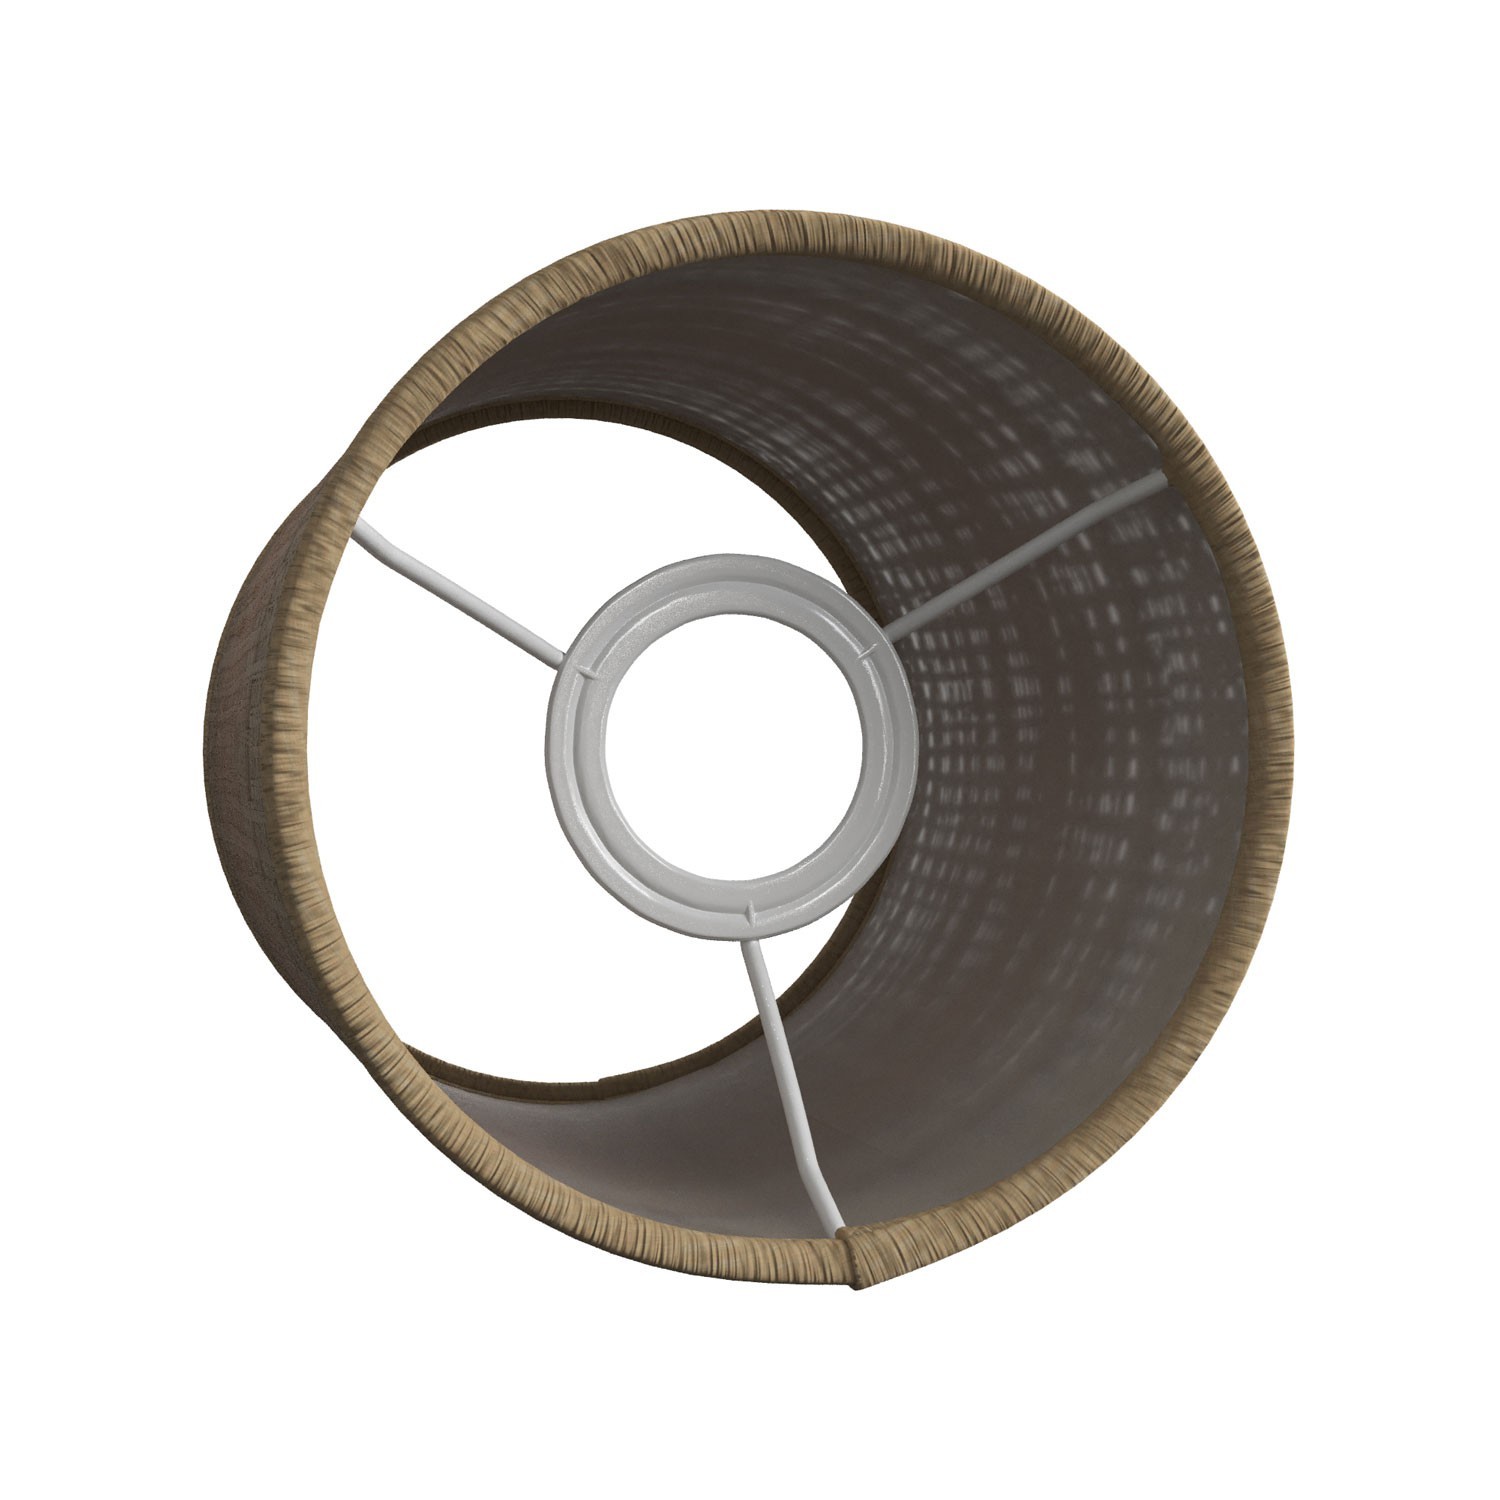 Abat-jour cylindrique en tissu avec culot E27, diamètre 15cm H18cm - 100% Made in Italy